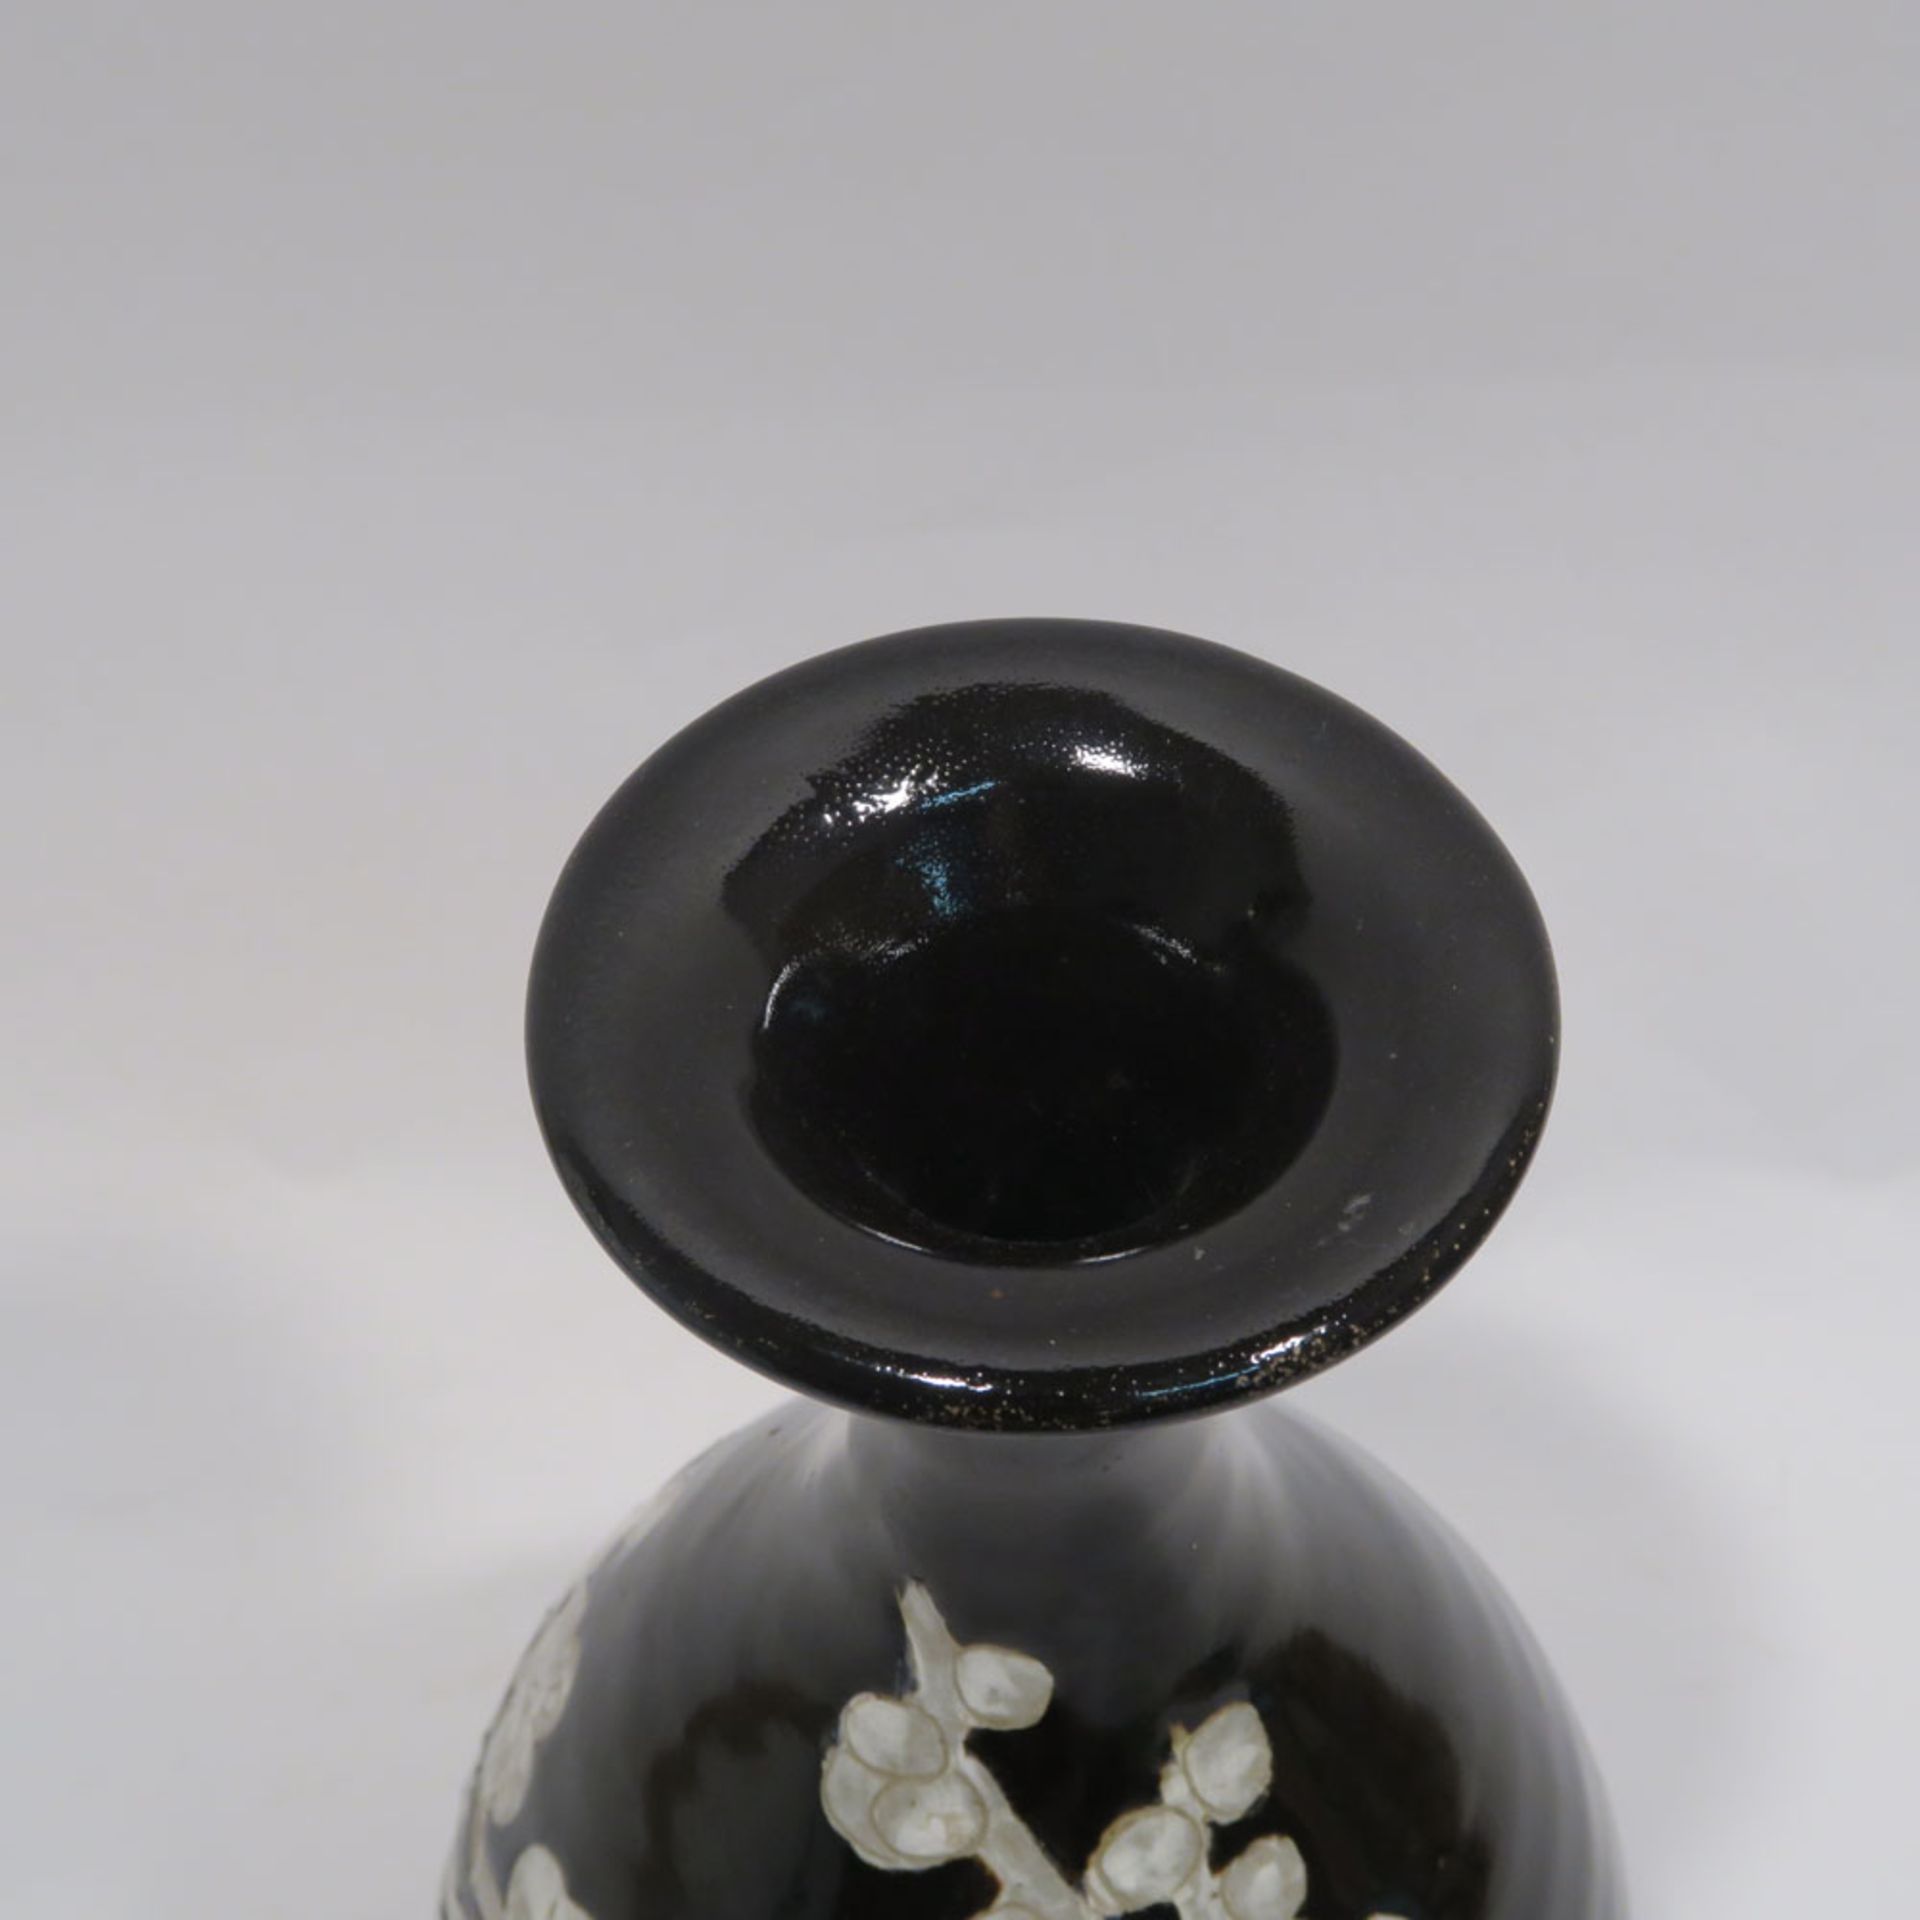 VaseChina, im Stil der Ming-Zeit. Steinzeug in der Art der Cizhou-Keramiken. Birnform mit - Bild 7 aus 10